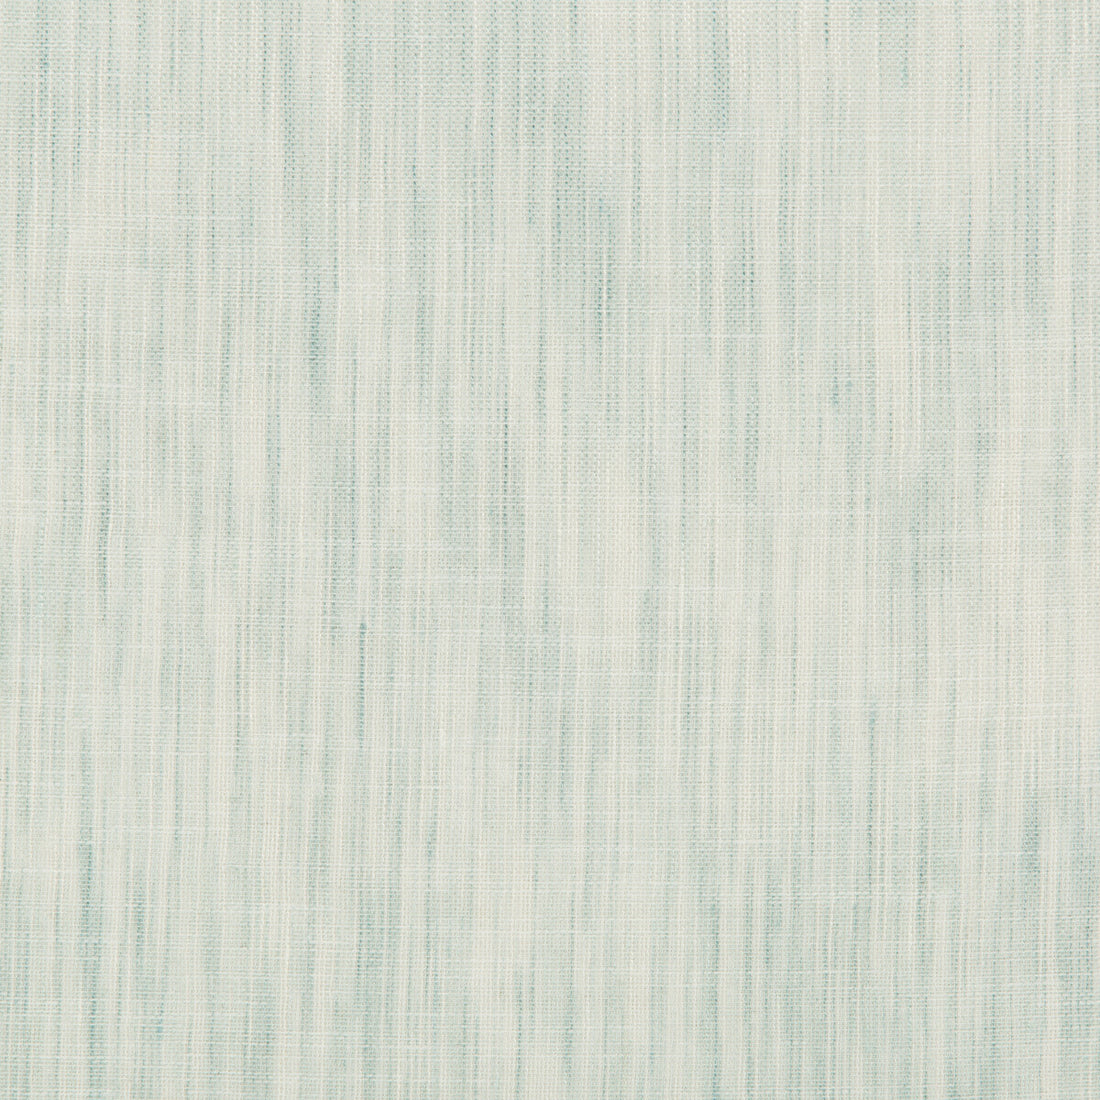 Kravet Design fabric in 4587-135 color - pattern 4587.135.0 - by Kravet Design